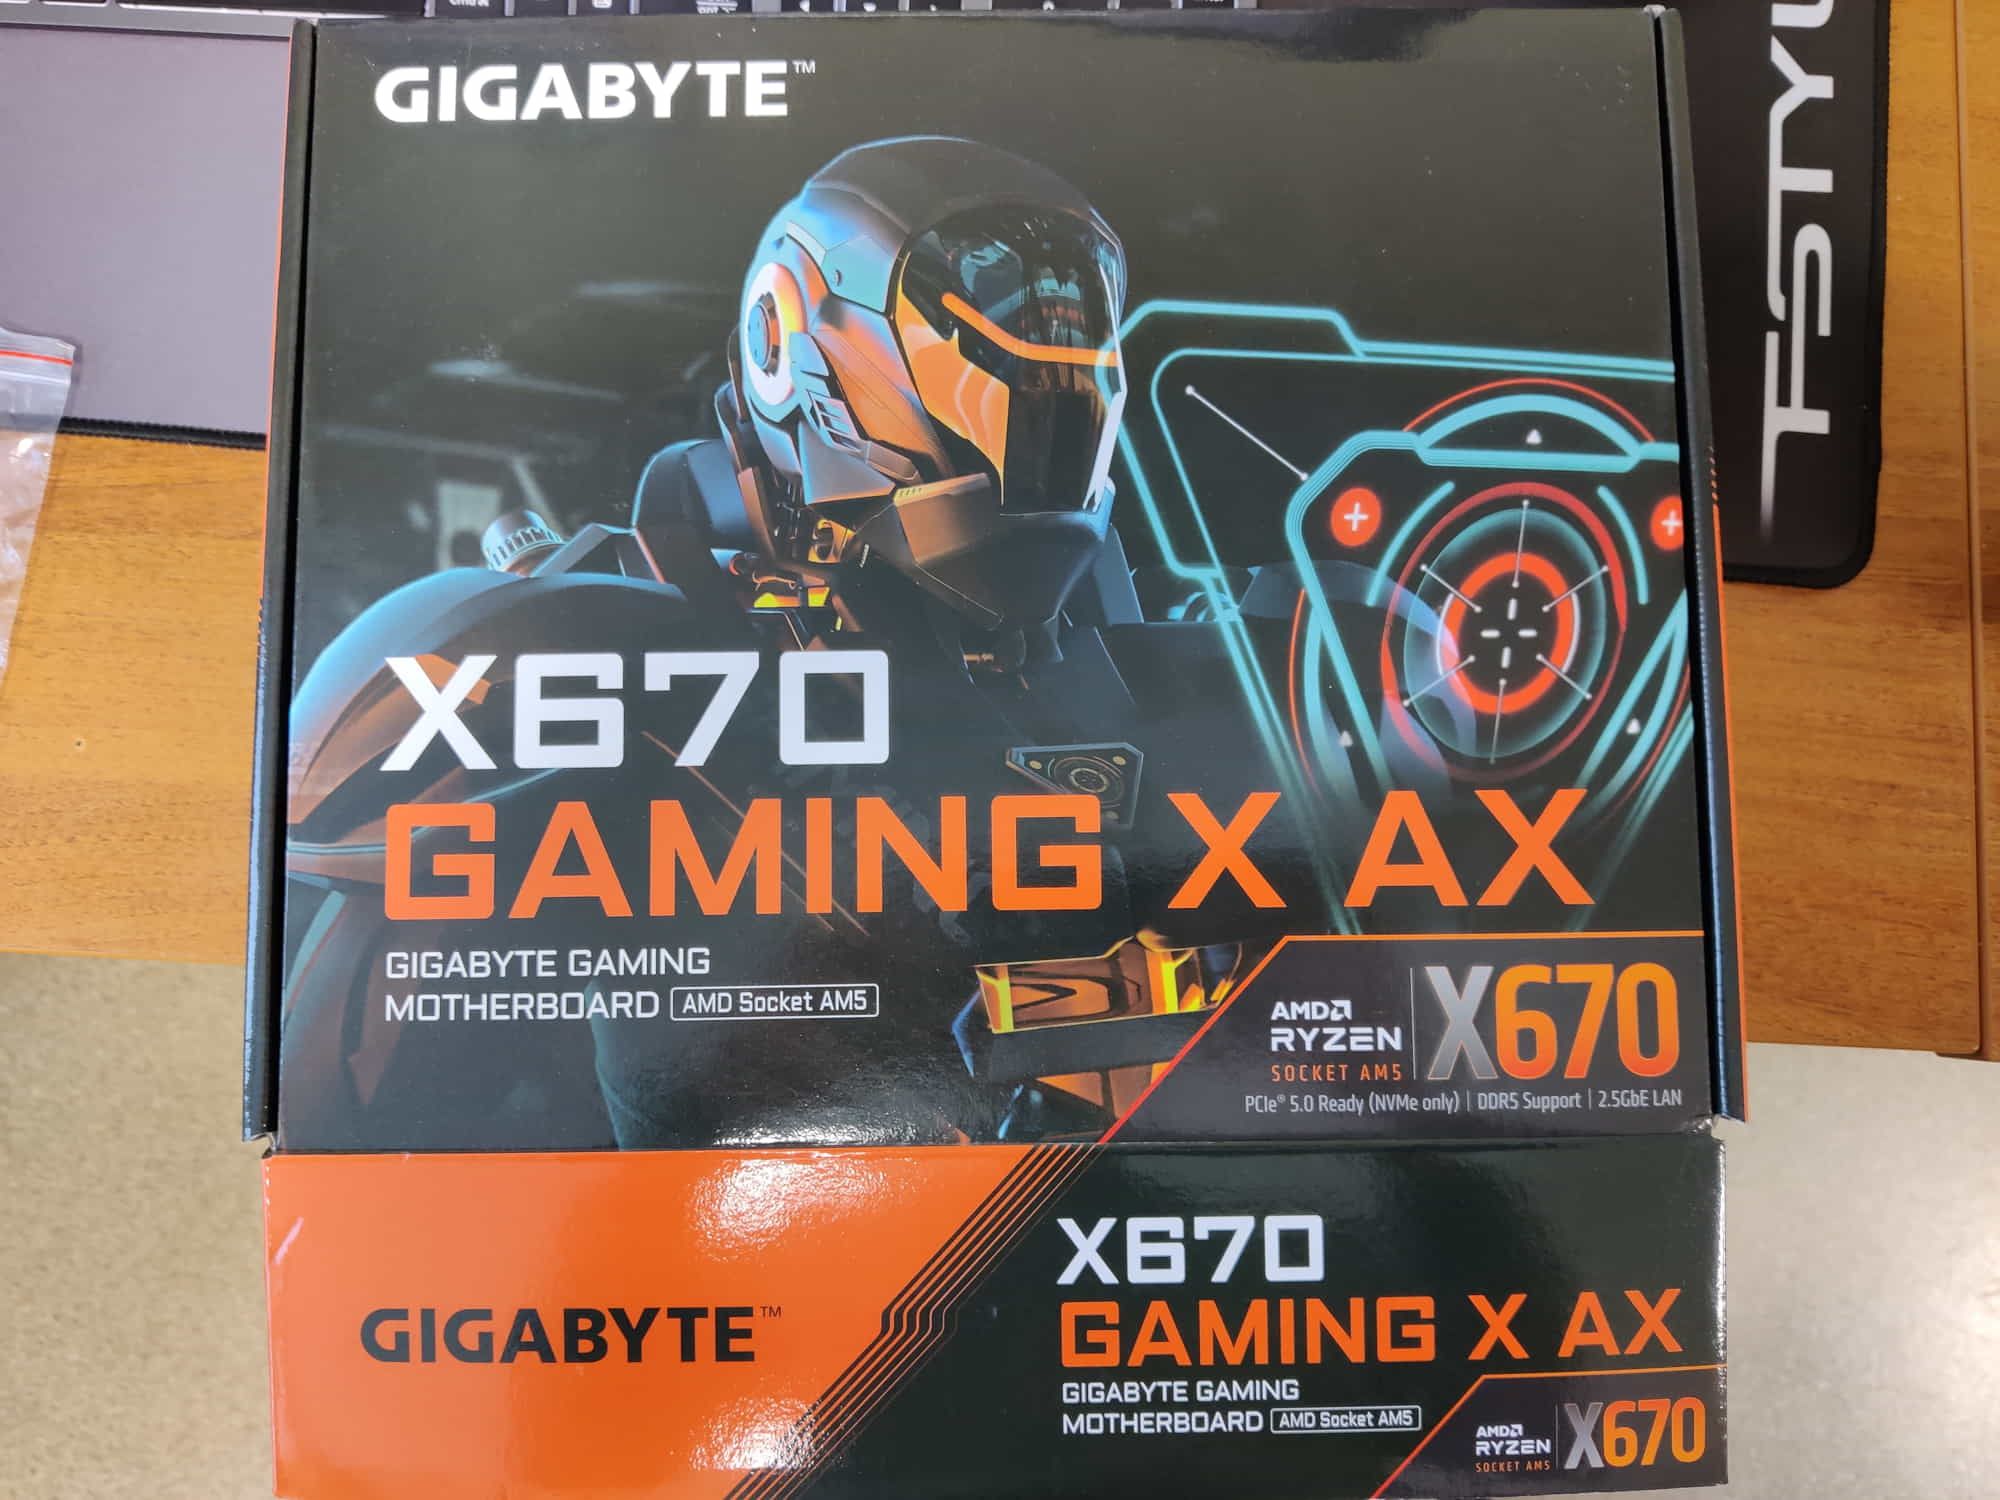 Gigabyte x670 gaming x. Gigabyte x670 Gaming x AX. X670 Gaming x AX. X670 Gaming x AX замена батарейки. Gigabyte x670 Gaming x AX высота от SSD до видеокарты.